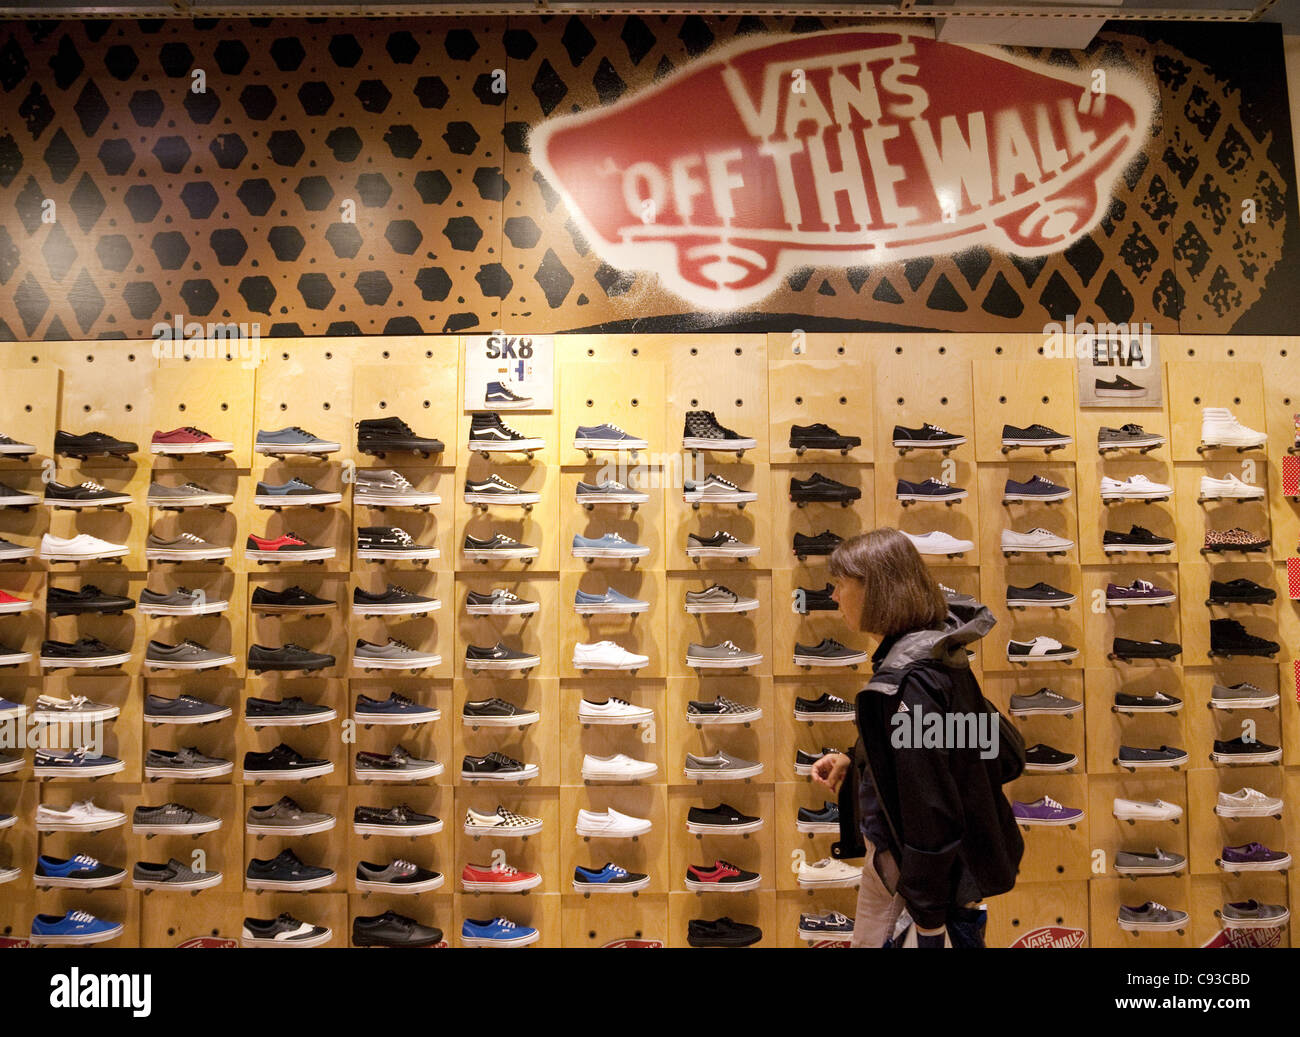 shoes shop vans